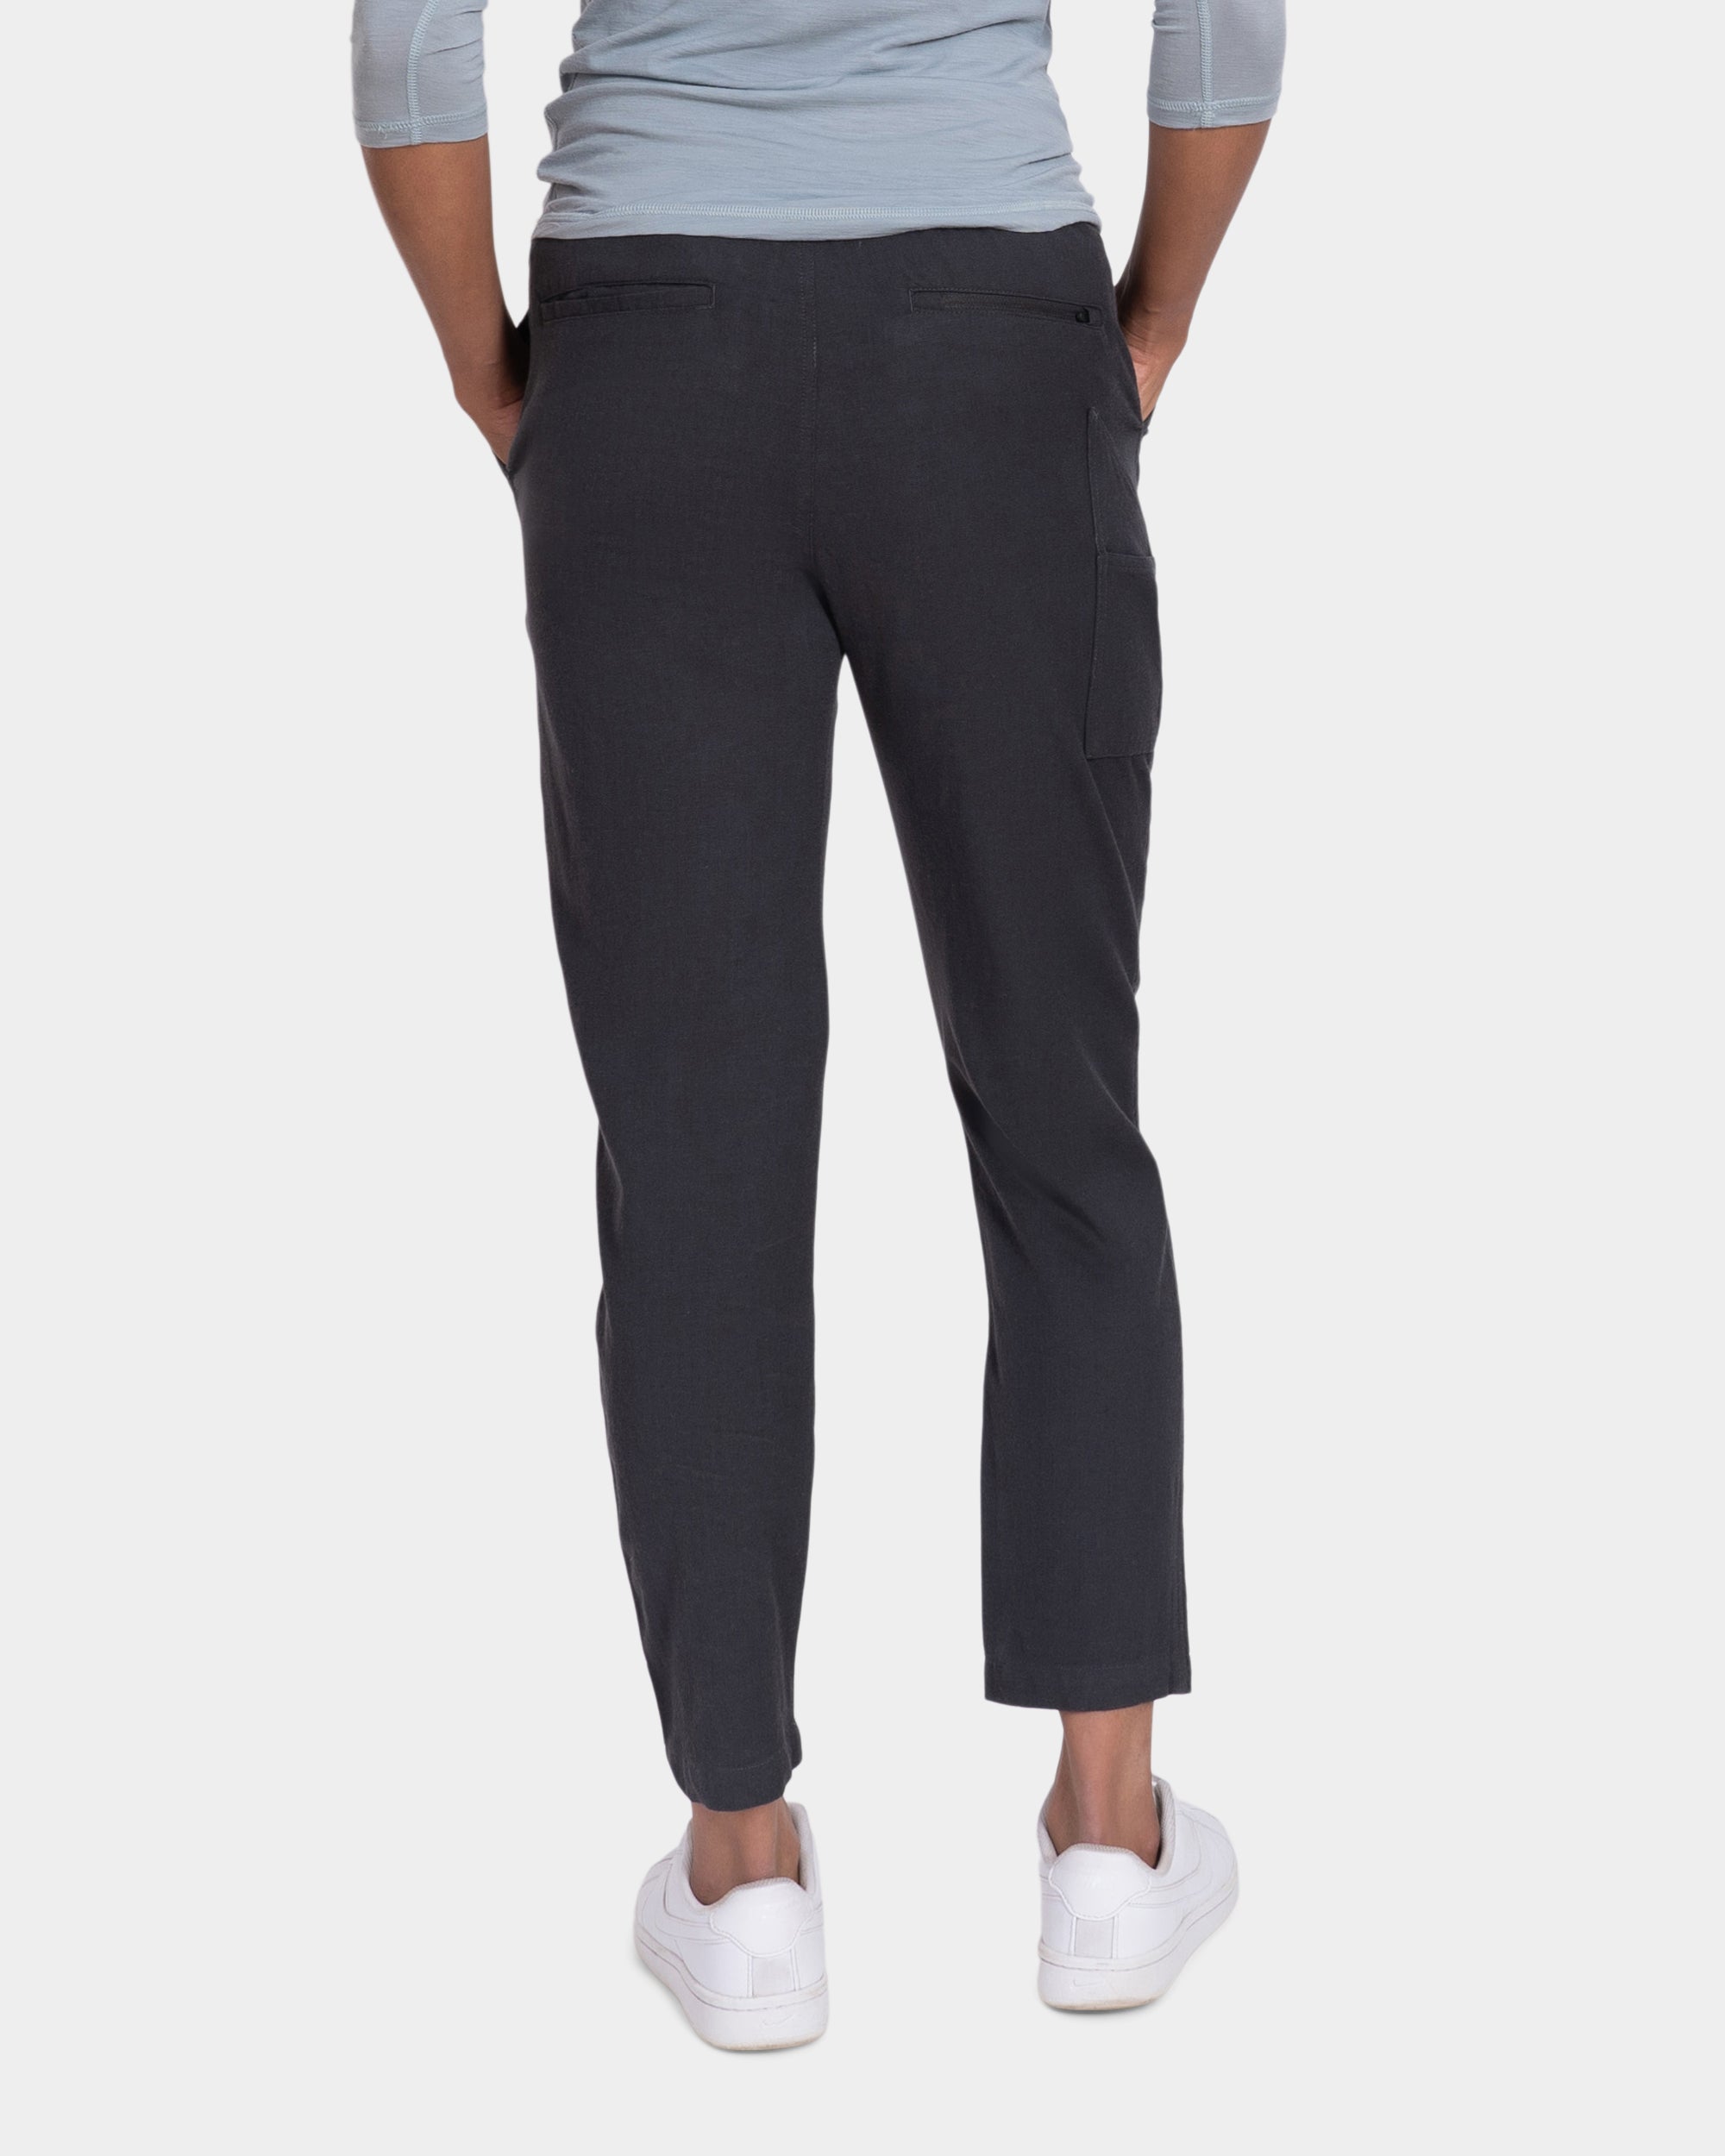 Longhaul Weekender Pants – Woolly Clothing Co